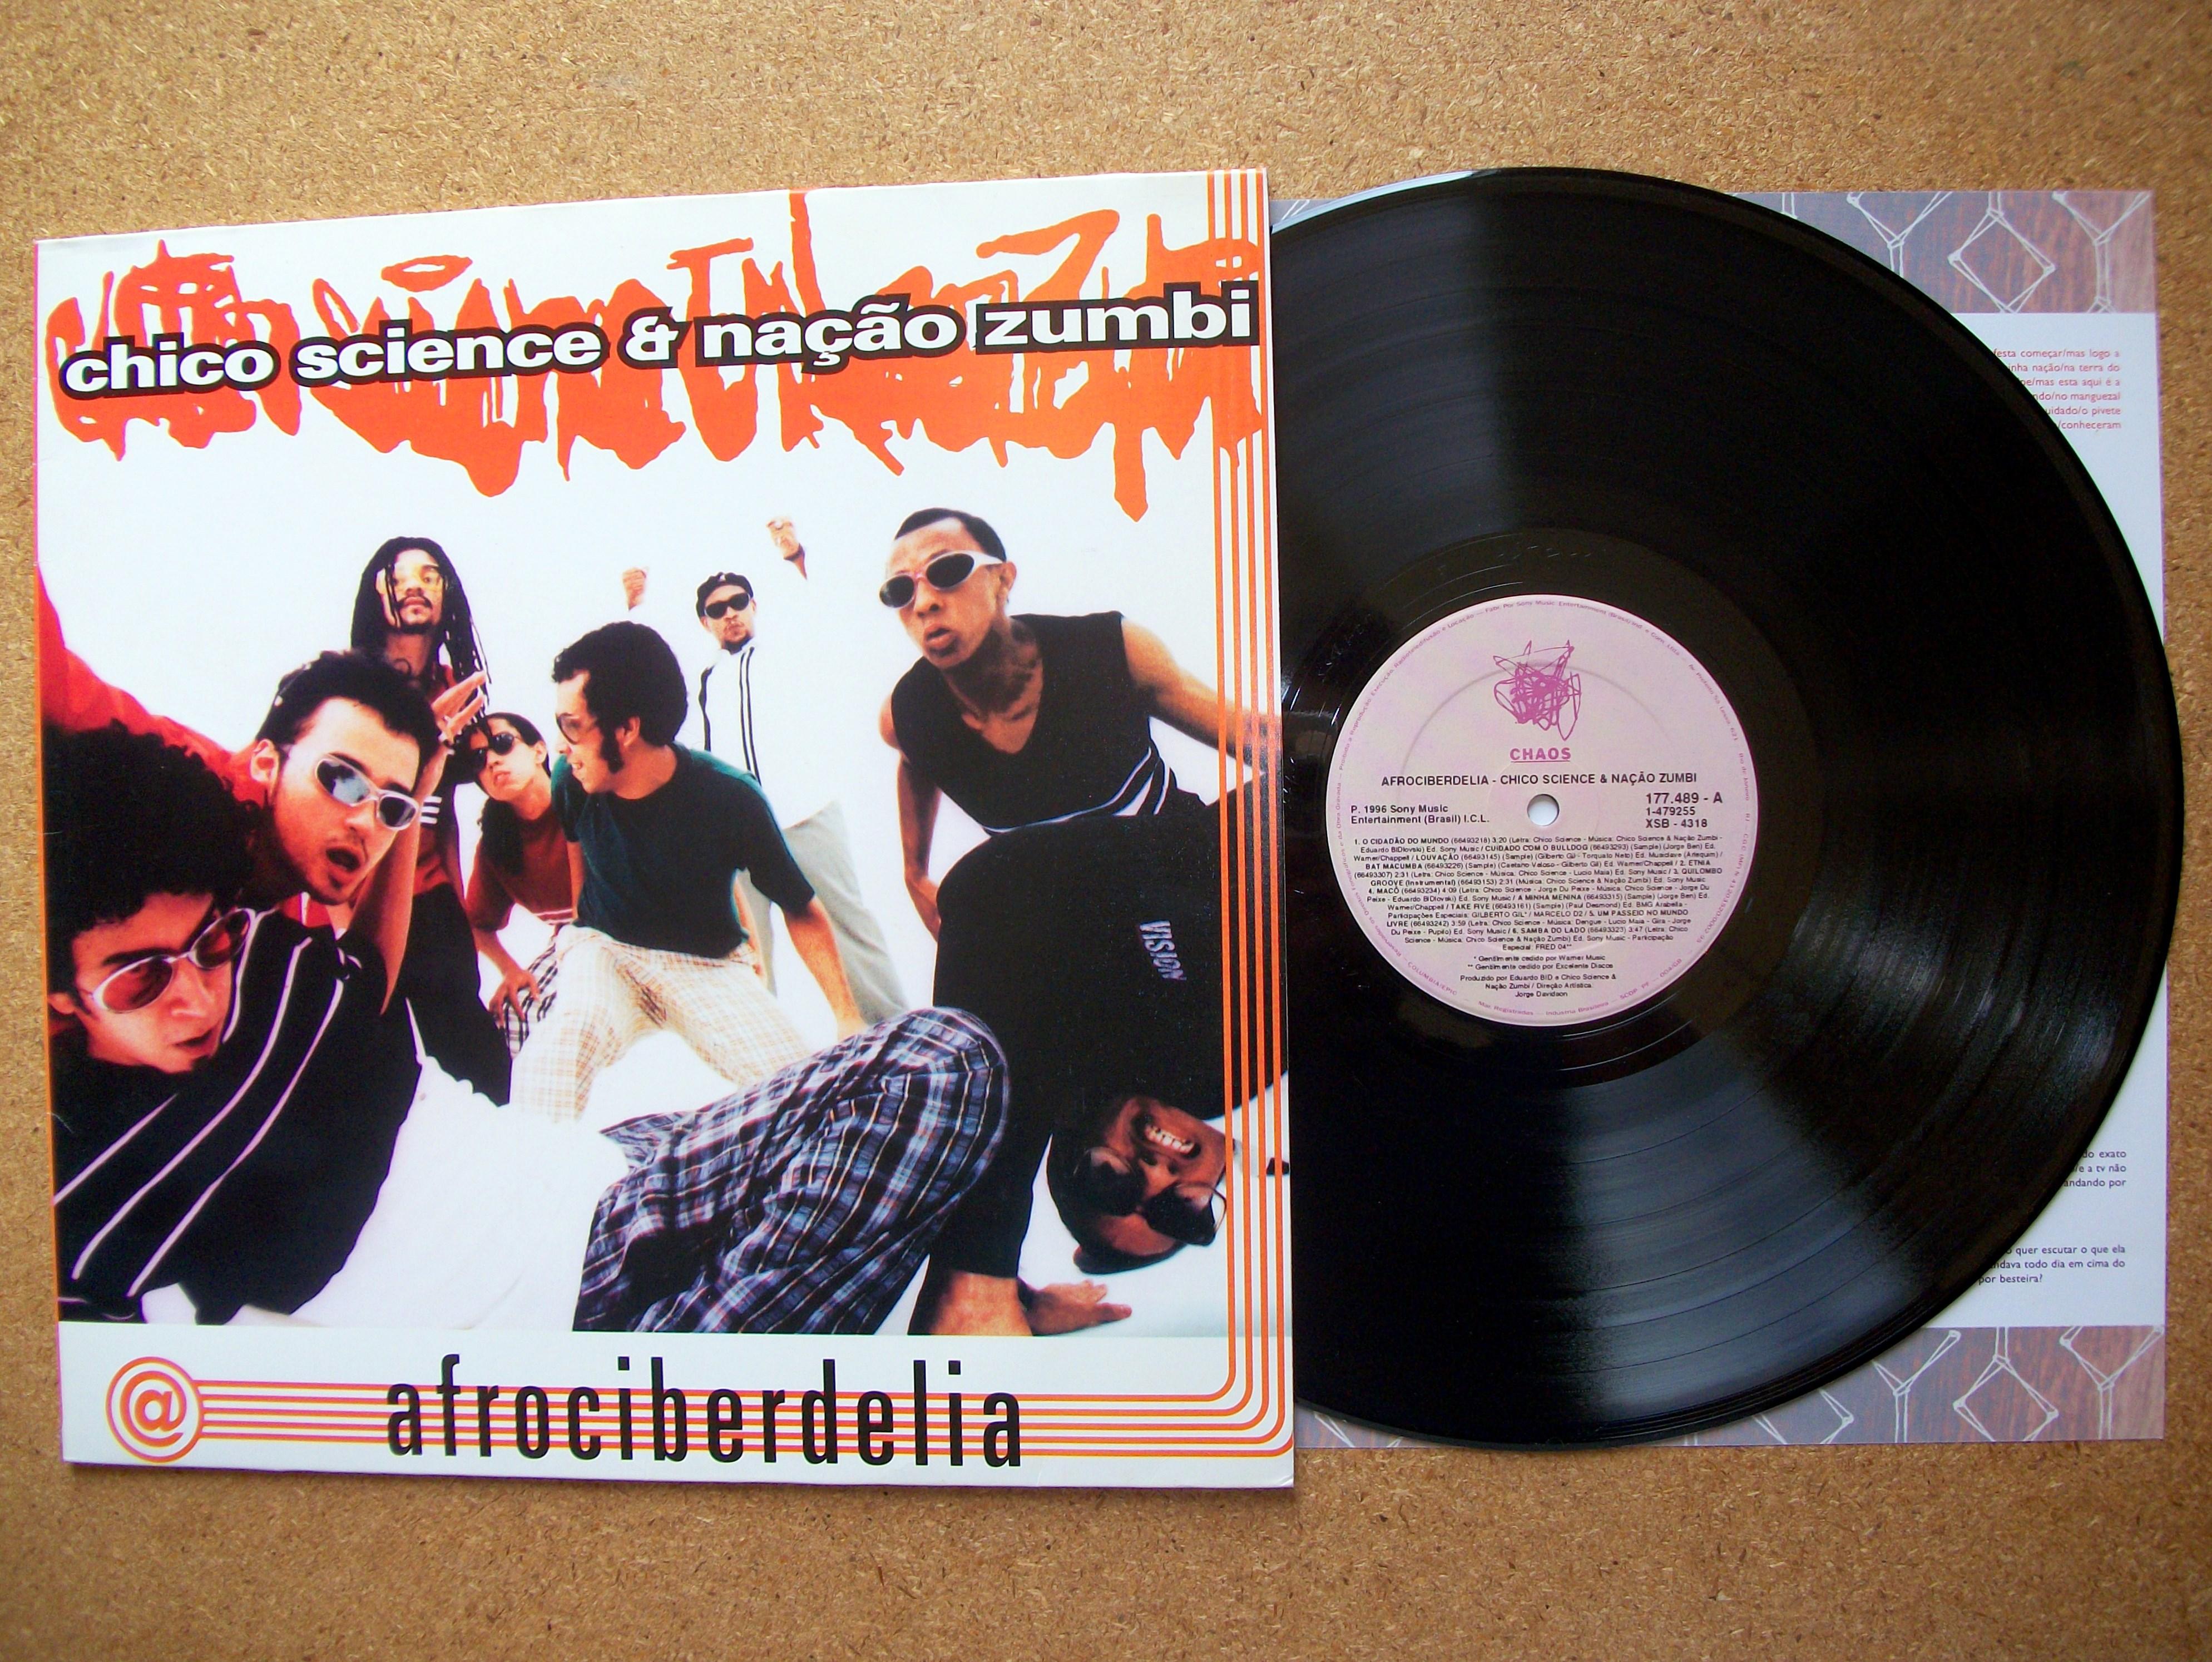 Chico Science & Nação Zumbi - Afrociberdelia:Segundo disco de estúdio da Nação e ultimo álbum propriamente dito da banda antes da morte do vocalista original (R$ 74,90)